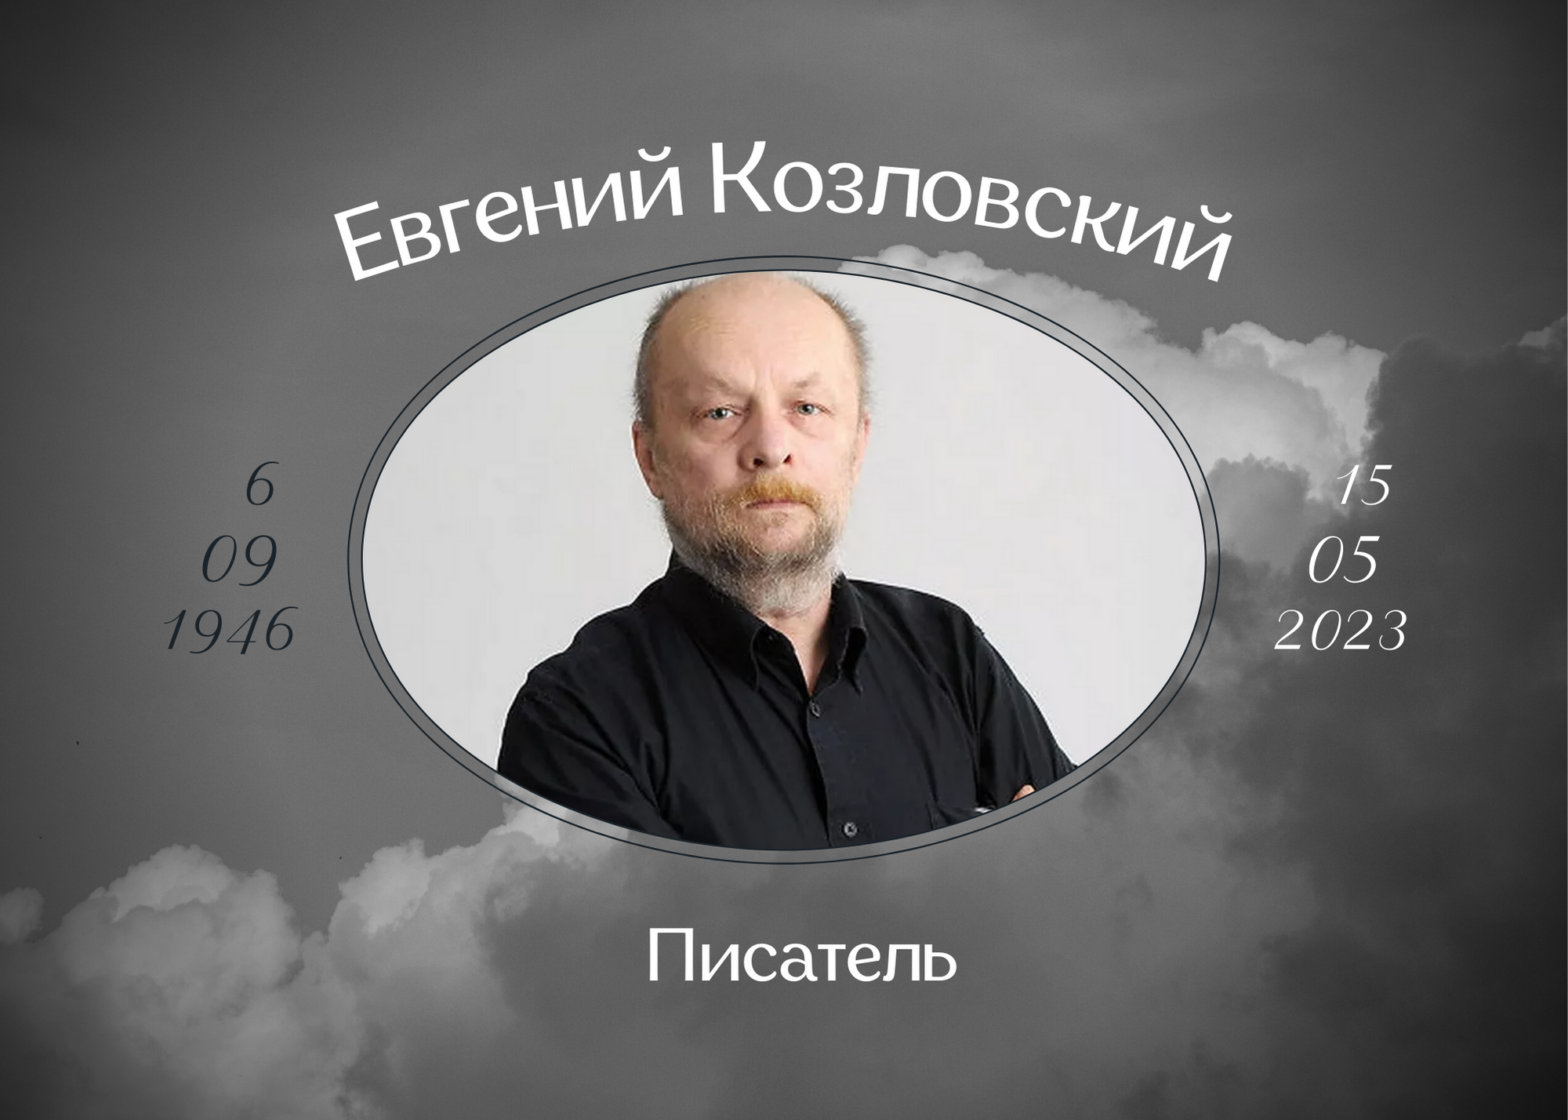 Умер писатель Евгений Козловский